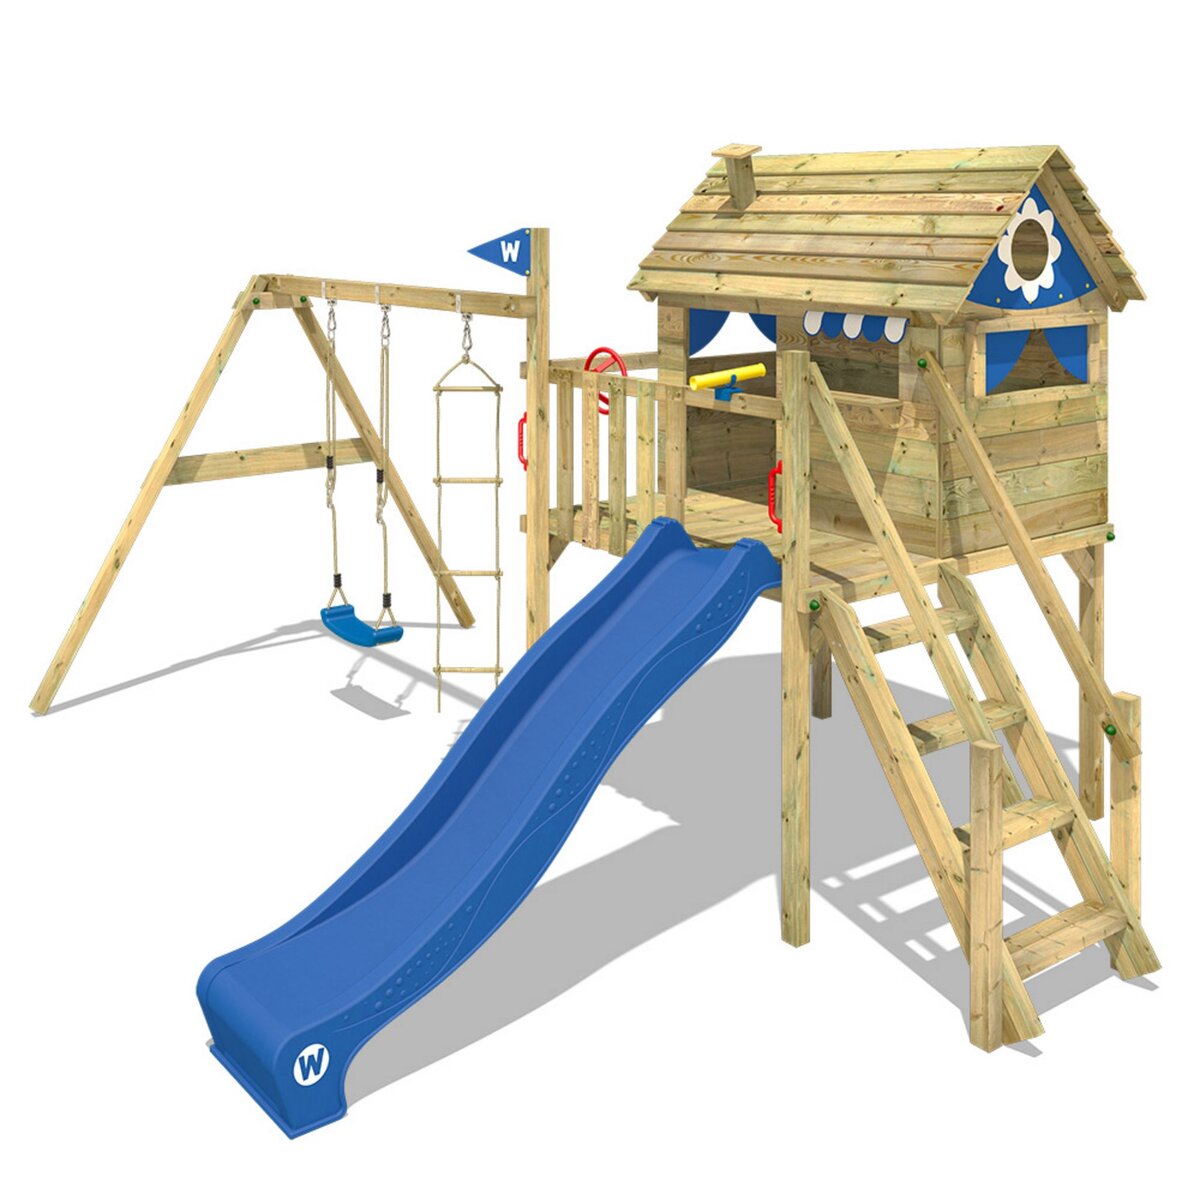 WICKEY Aire de jeux Portique bois Smart Journey avec balançoire et toboggan bleu Maison enfant extérieure avec bac à sable, échelle d'escalade & accessoires de jeux